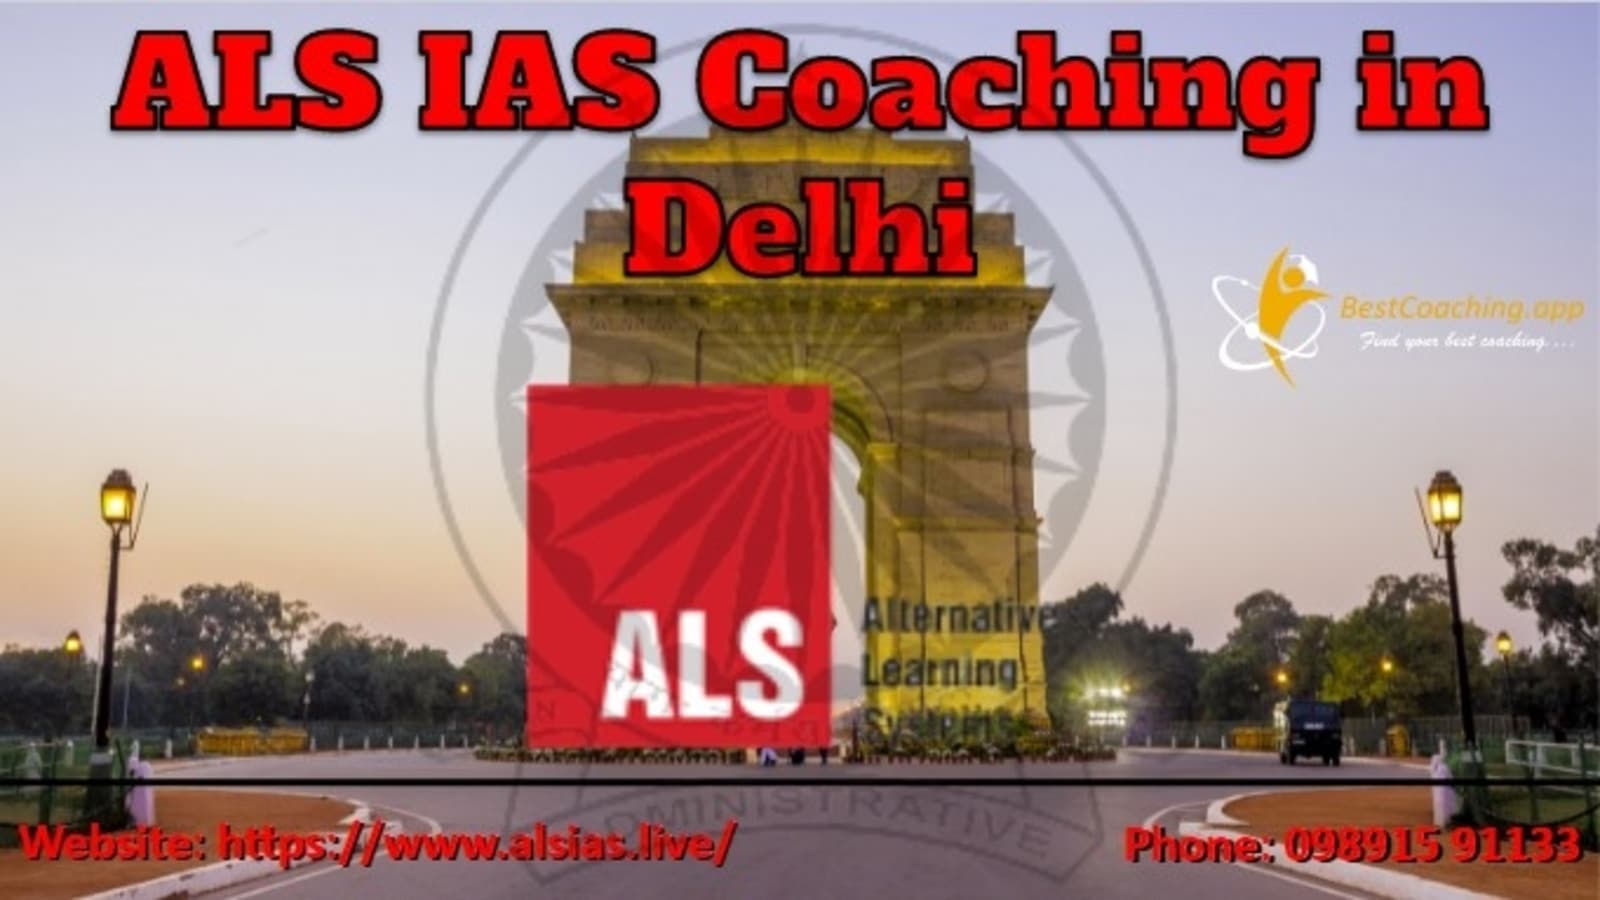 ALS IAS Coaching in Delhi